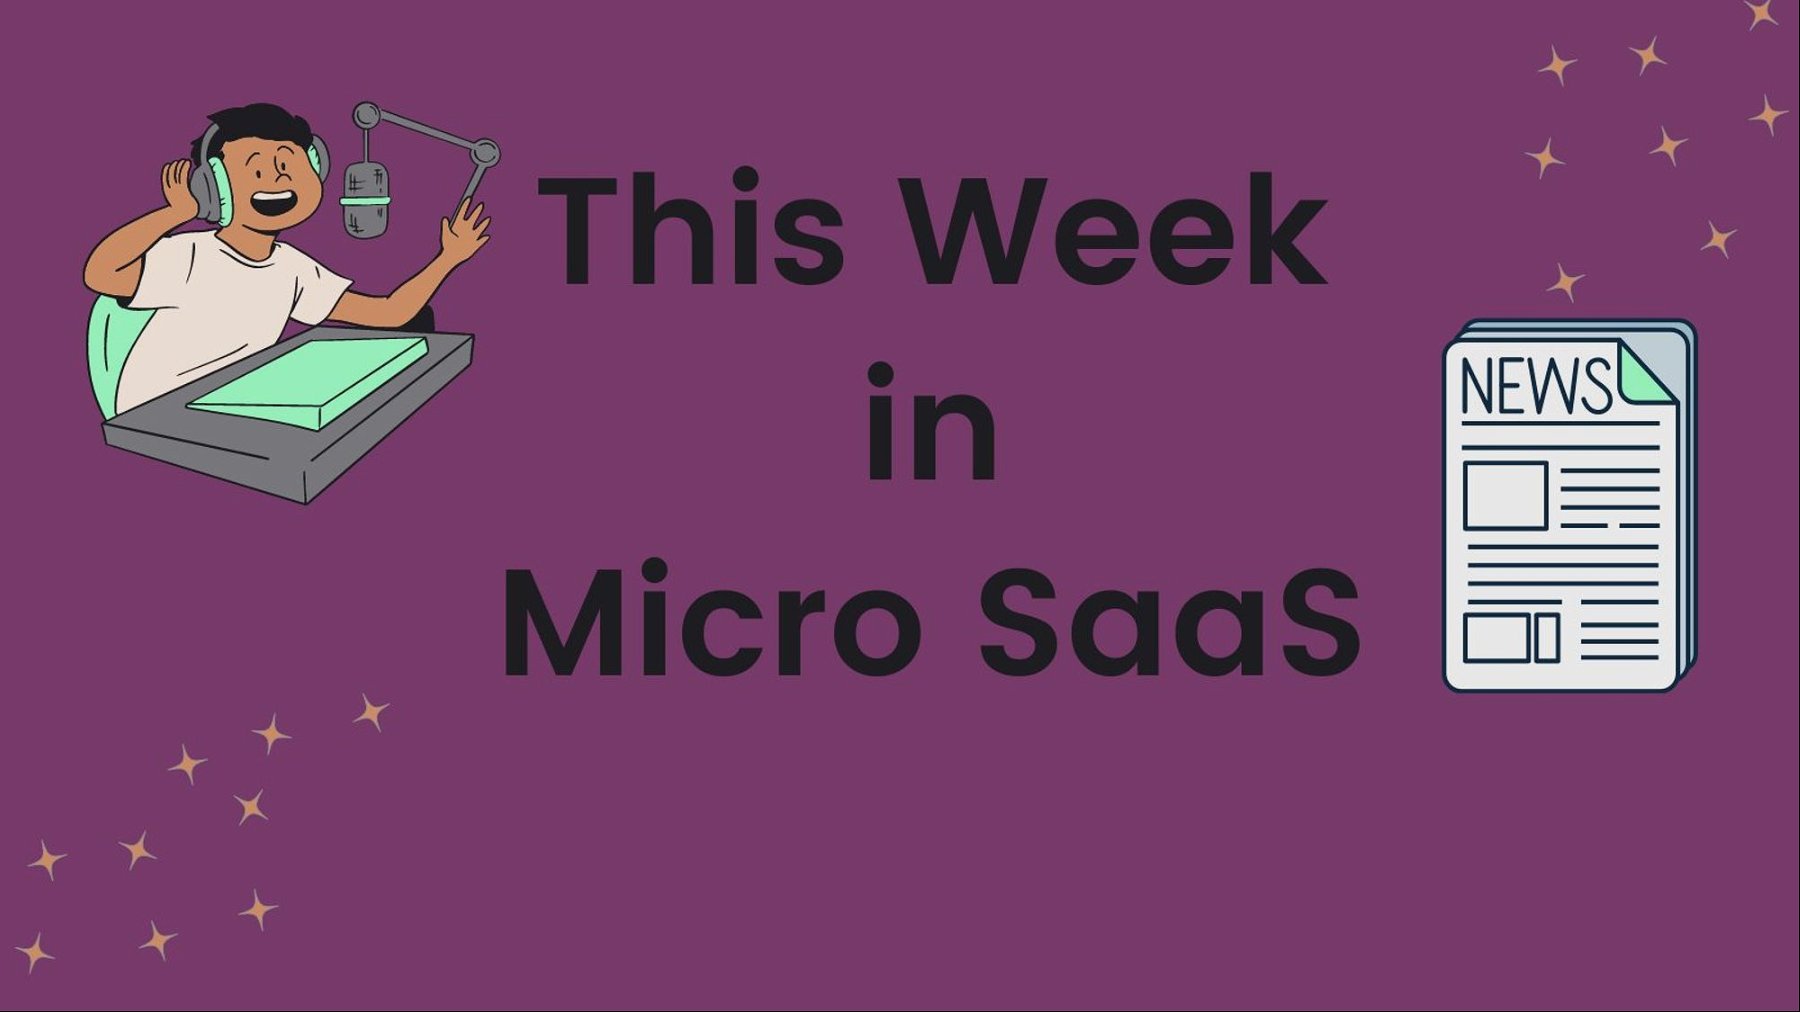 This week in MicroSaaS - ChatDox $1.5K in monthly revenue